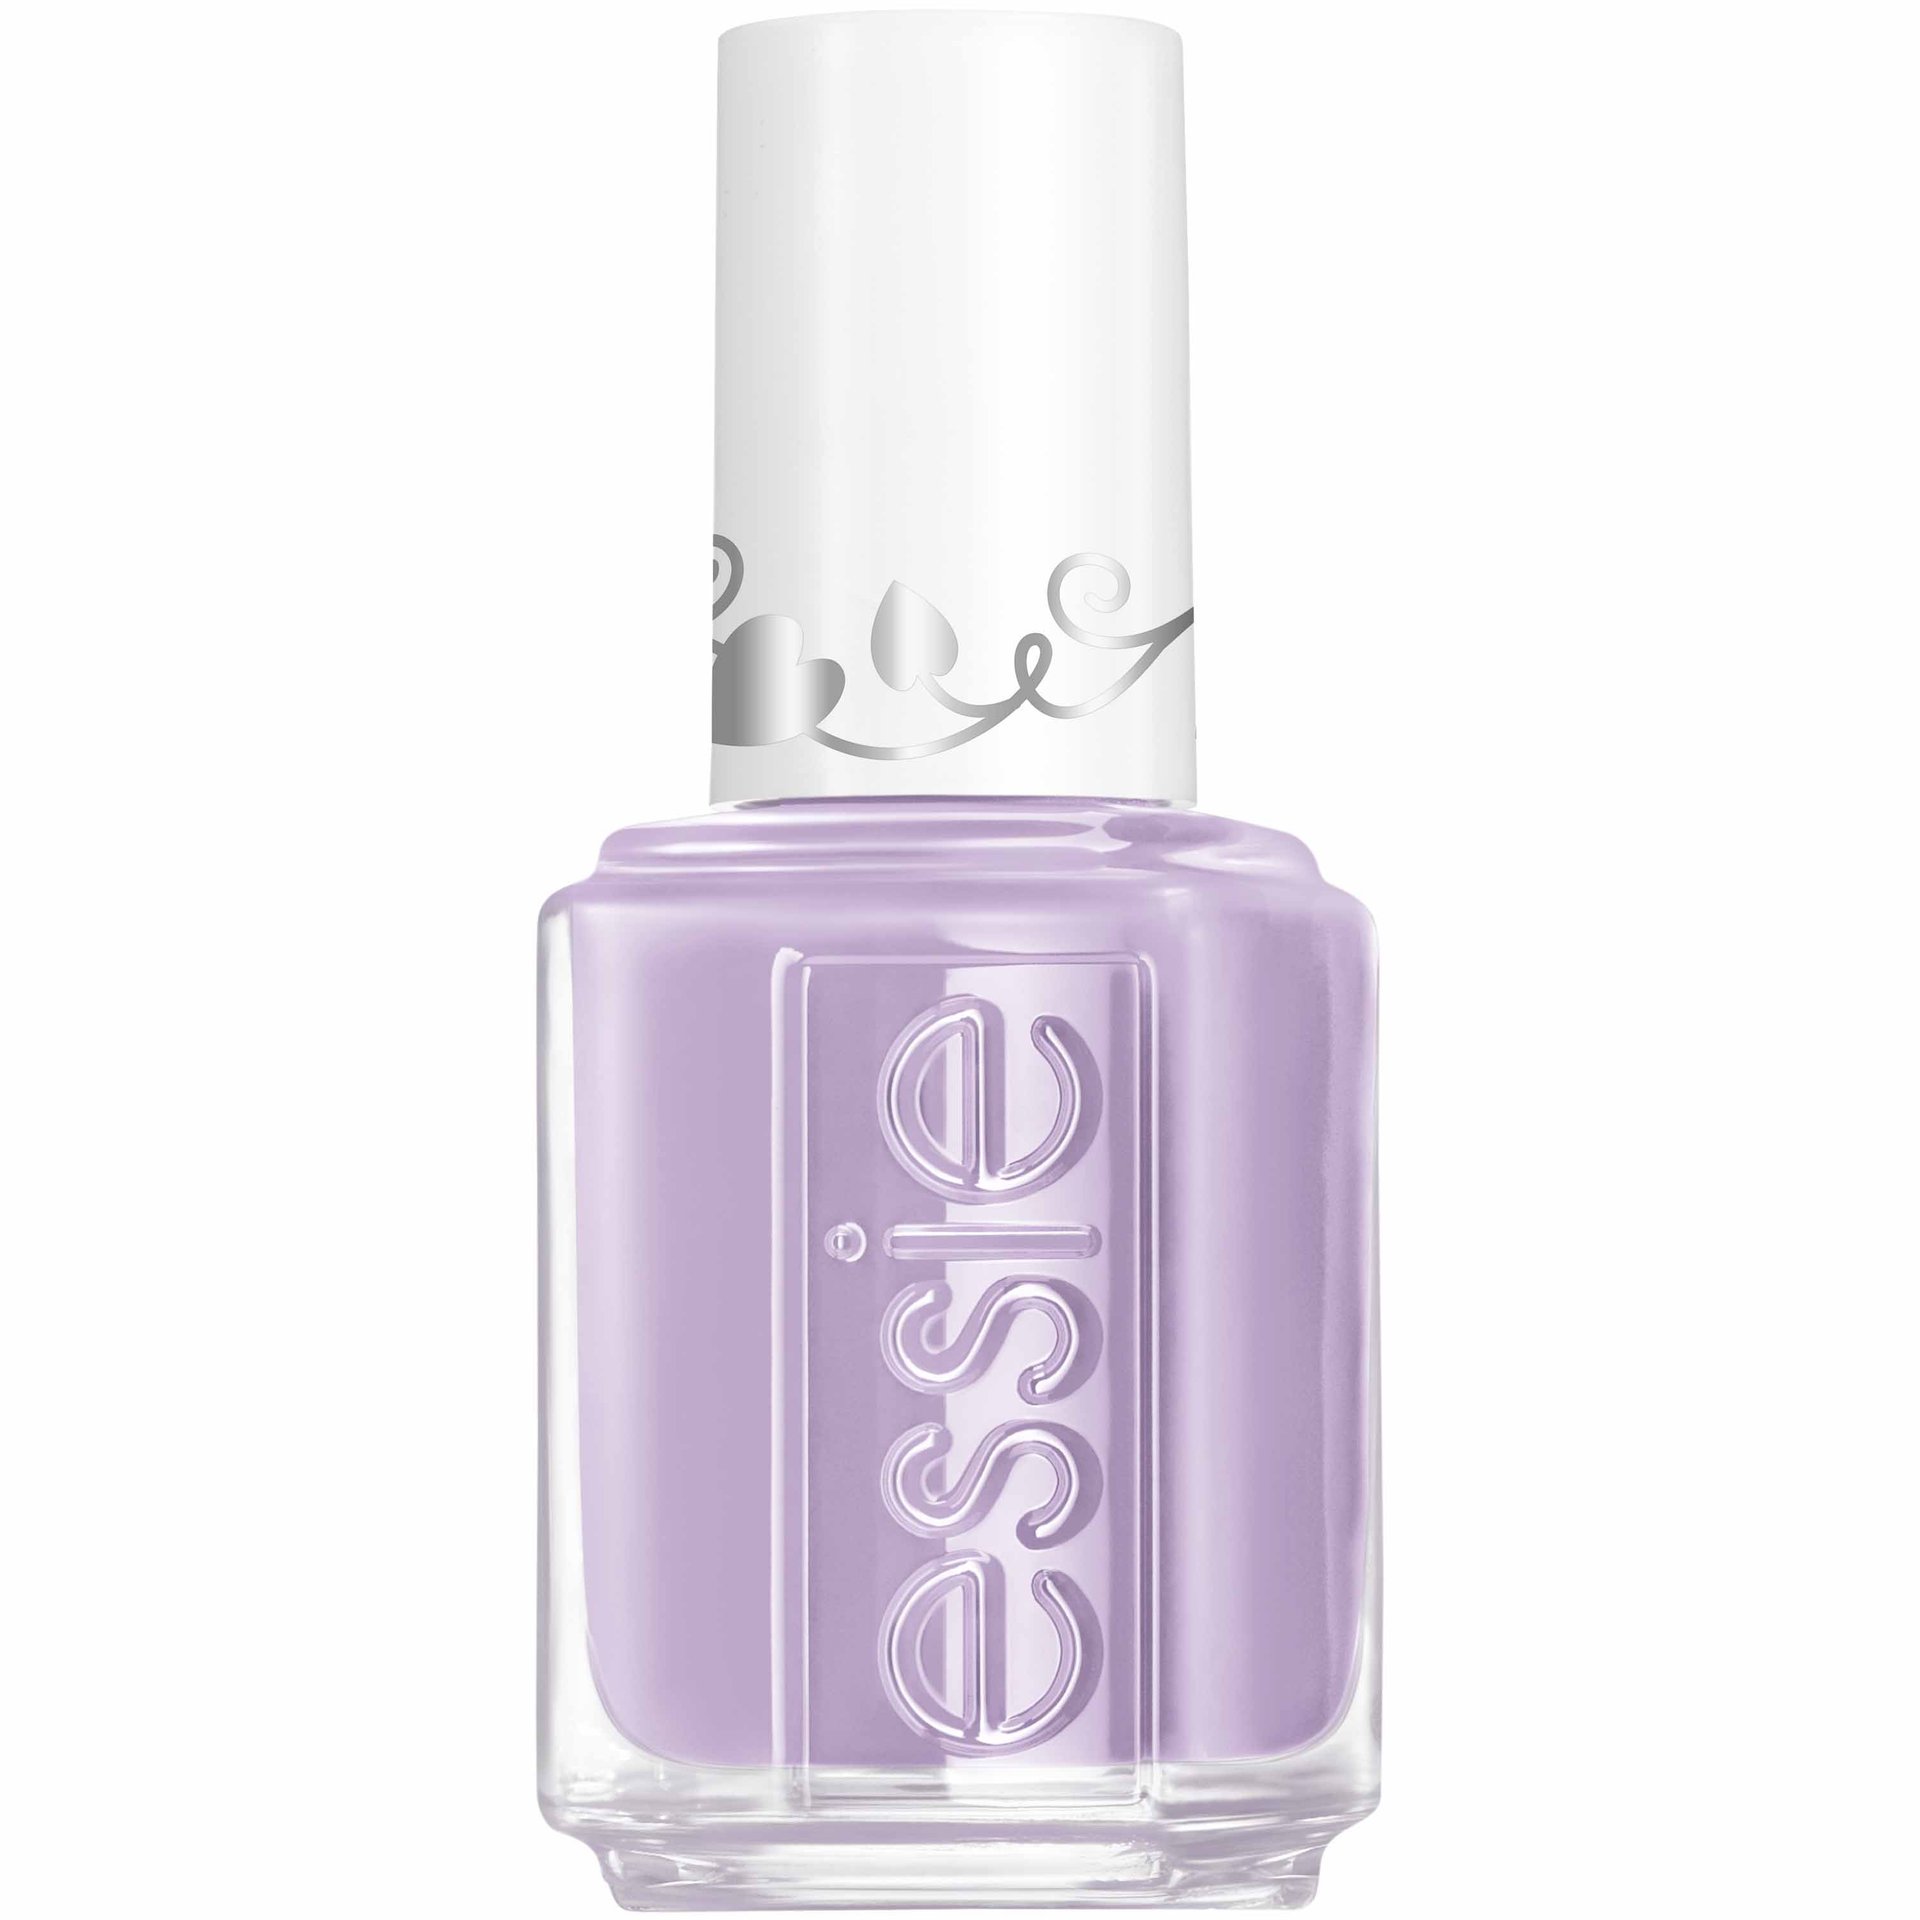 Plant One On Me - Lavender Purple Nail Polish - Essie